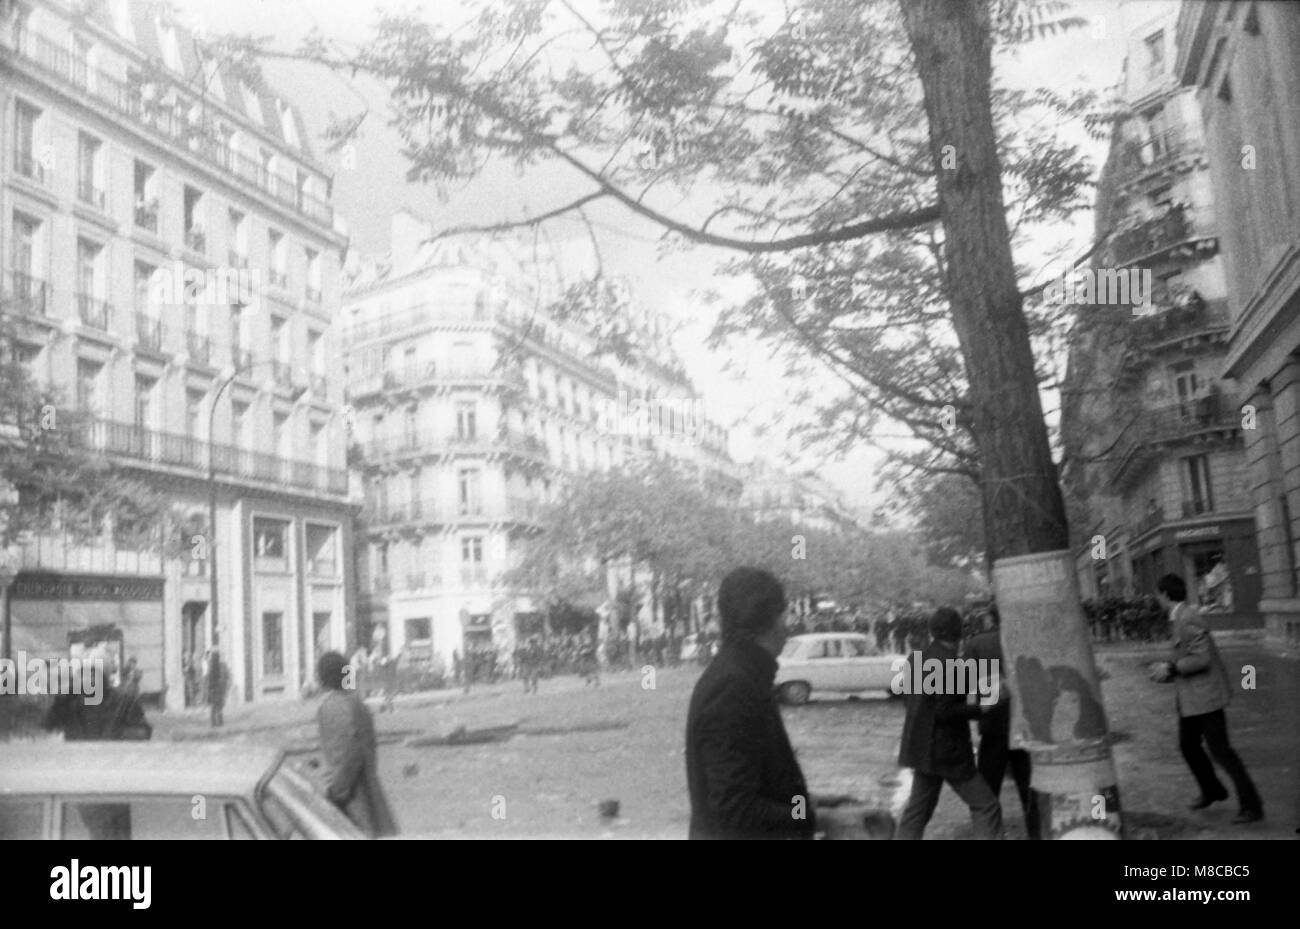 Philippe Gras / Le Pictorium - Mai 68 - 1968 - France / Ile-de-France (région) / Paris - Boulevard Saint Germain des affrontements entre manifestants et policiers Banque D'Images